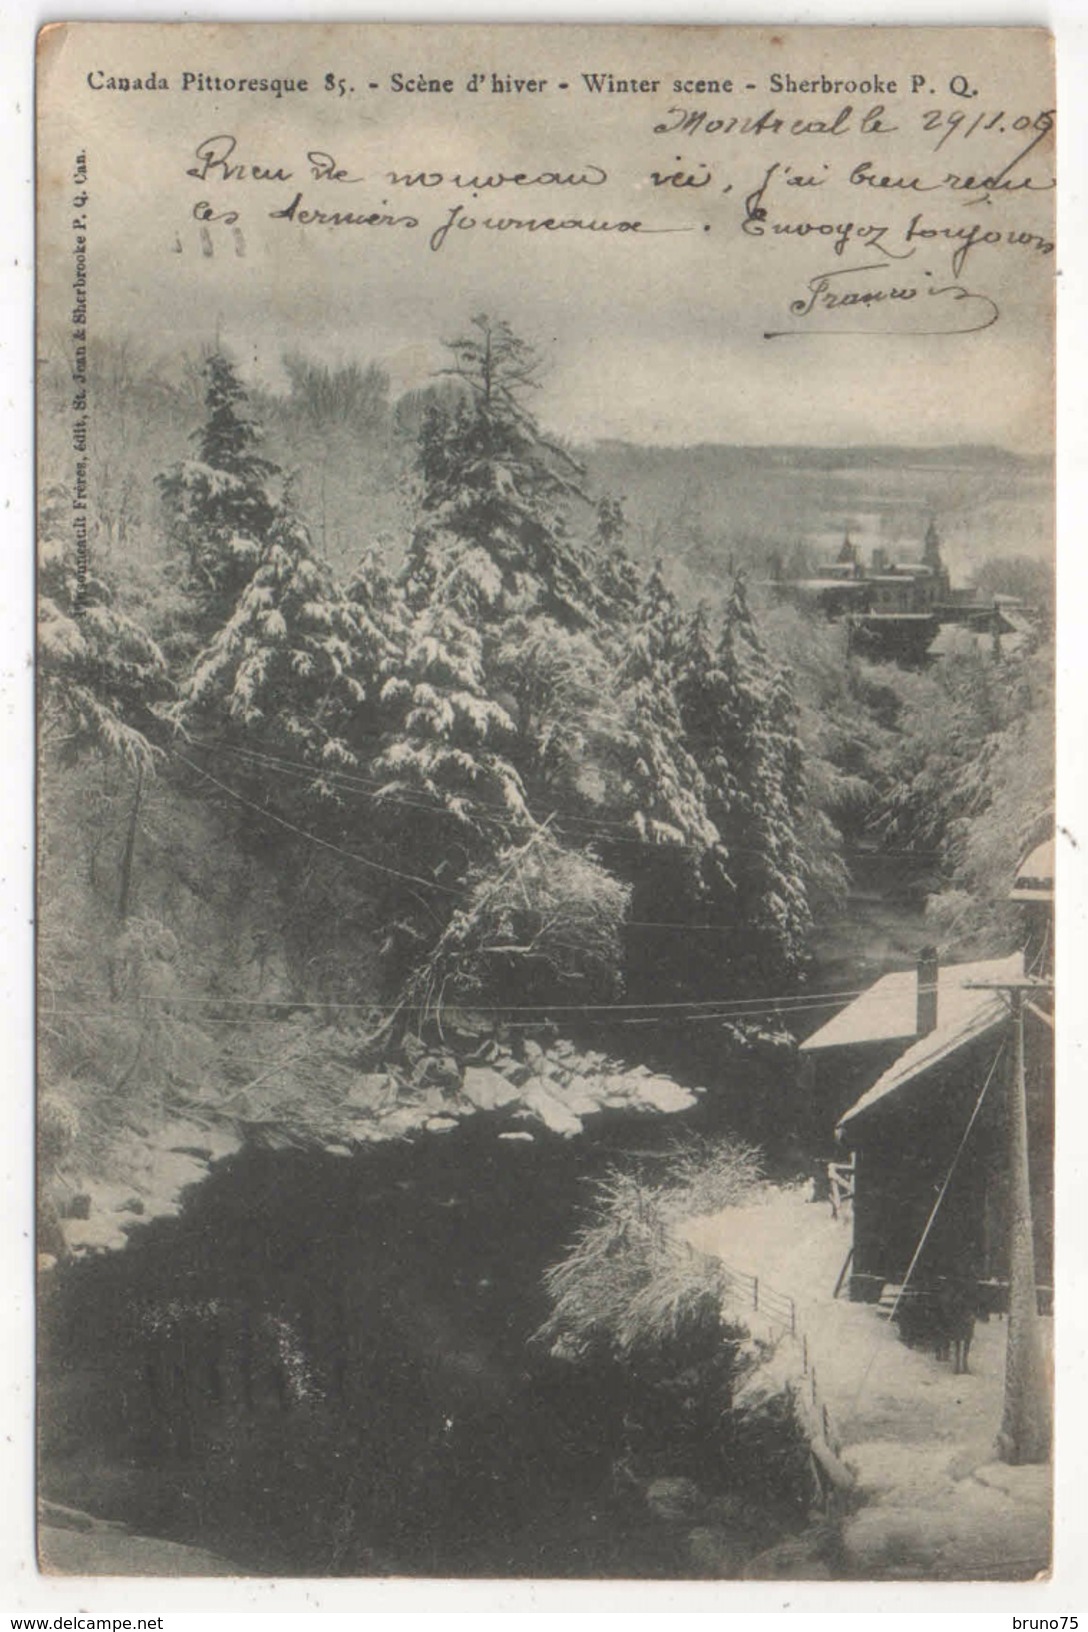 Canada Pittoresque 85 - Scène D'hiver - Winter Scene - Sherbrooke, P. Q. - 1907 - Sherbrooke